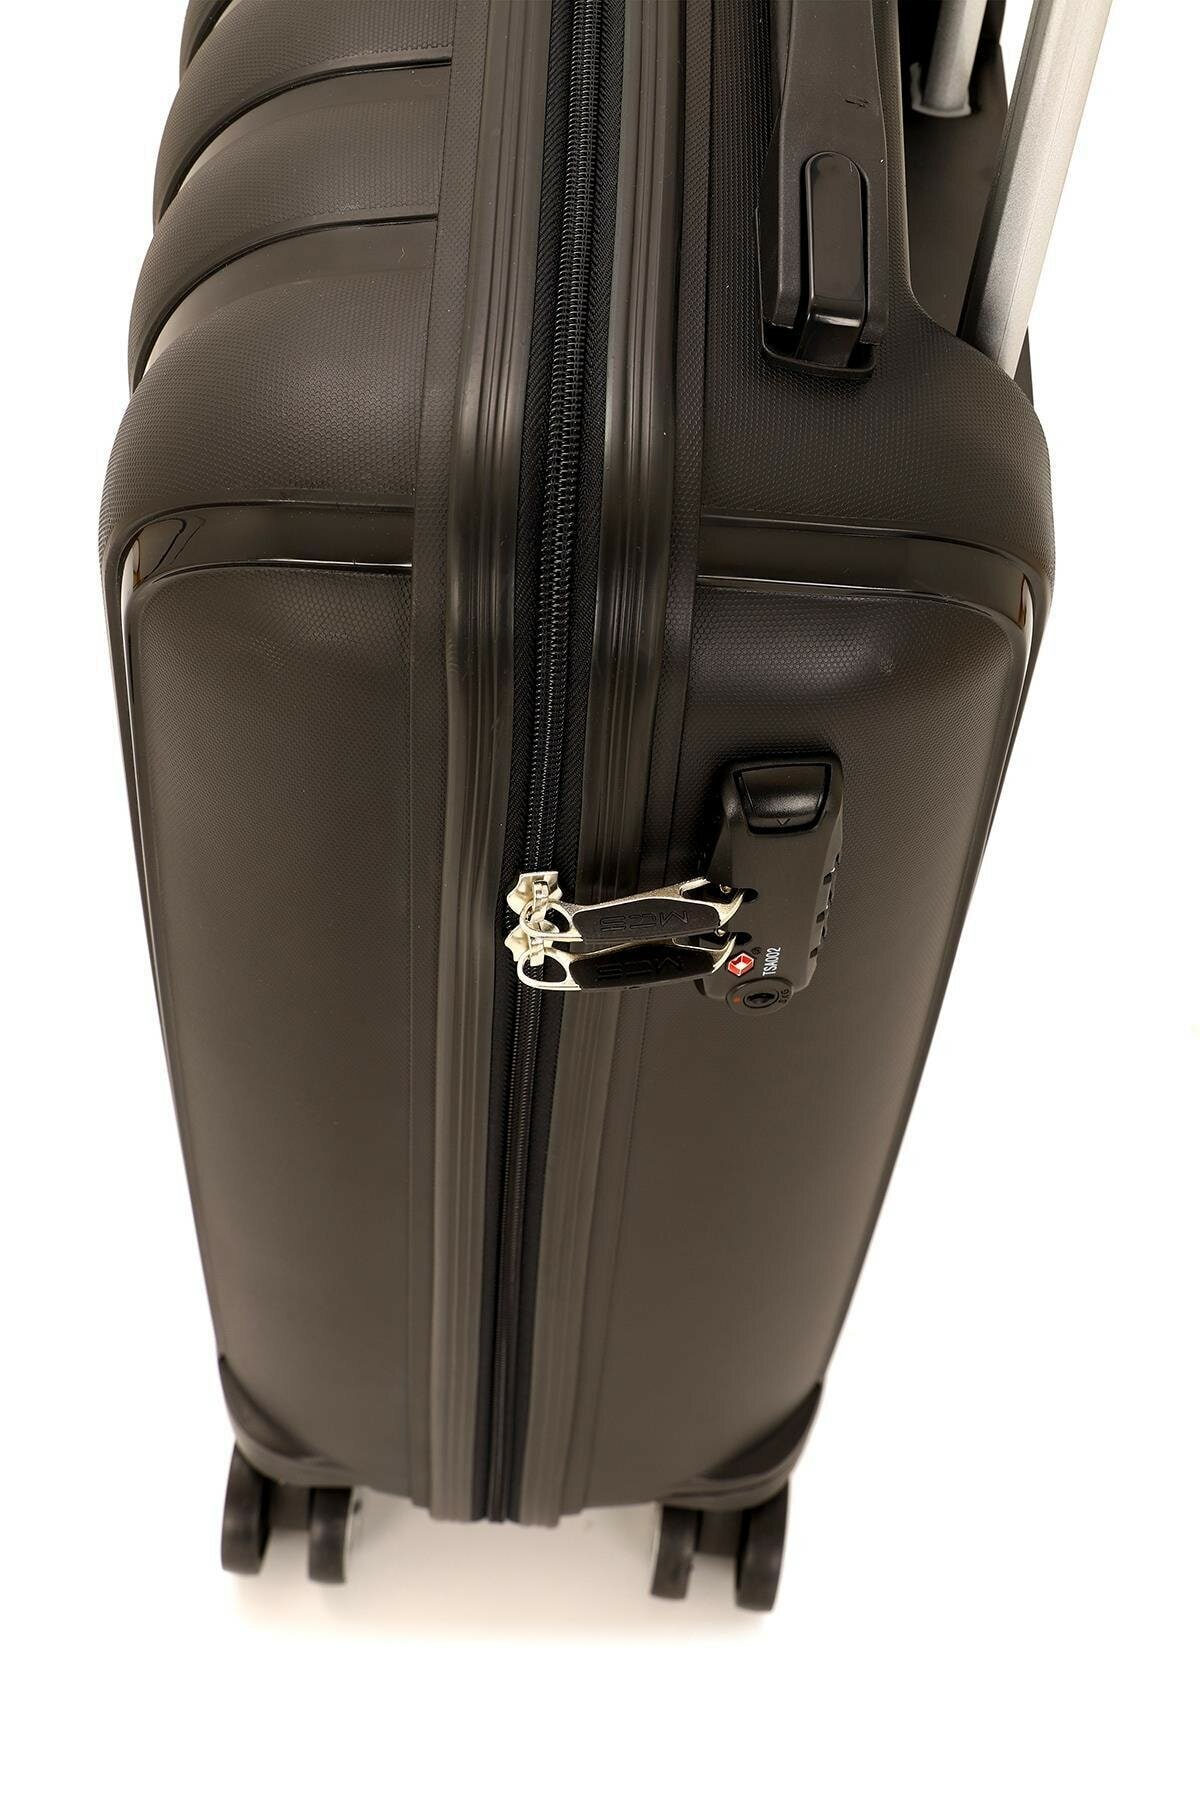 Большой чемодан из полипропилена MCS V305 L BLACK! Для 23 кг! - 3